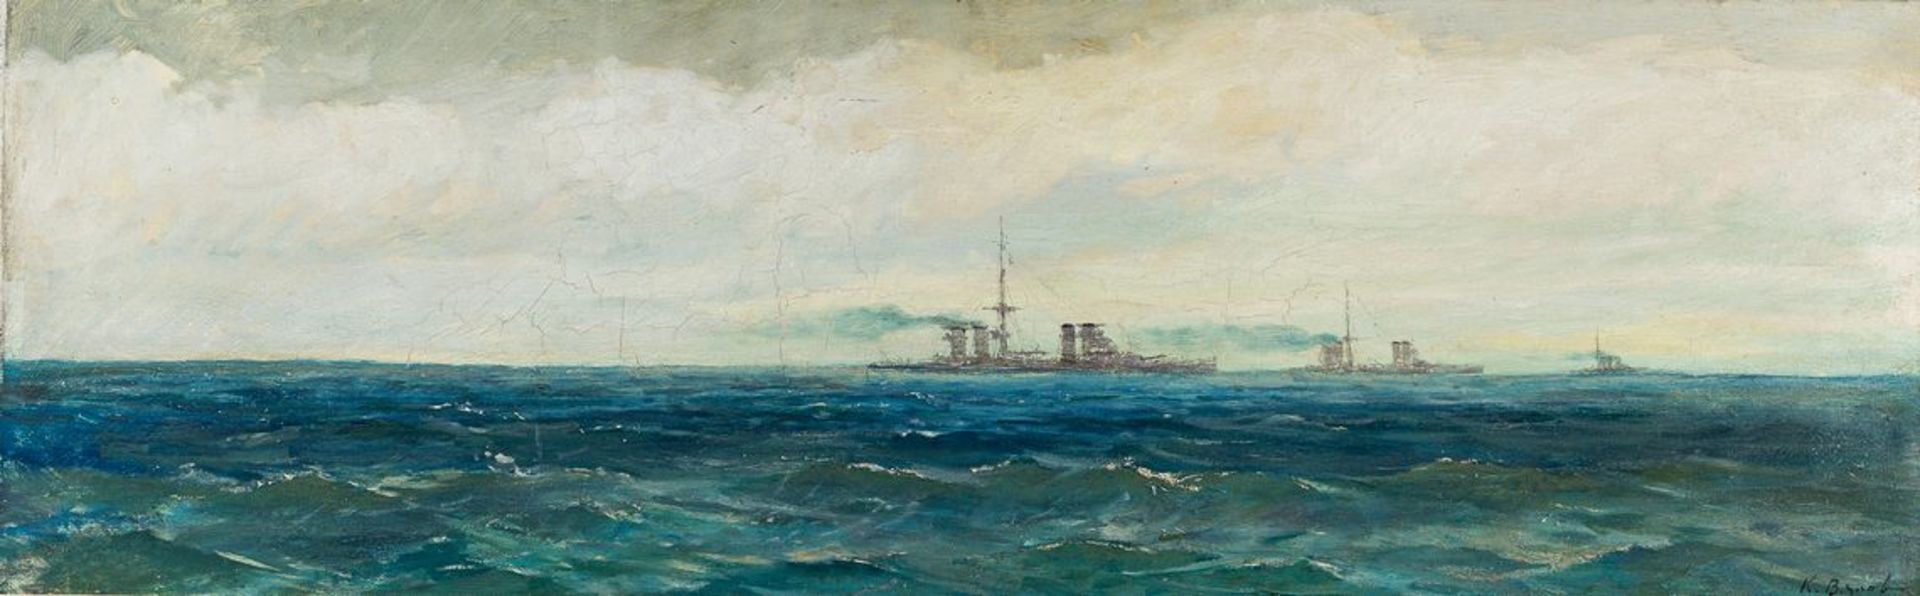 Vjalov, K.Um 1900. Öl/Malpappe. Zwei Seestücke. Kriegsschiffe auf hoher See. Jeweils u.r. sign. (